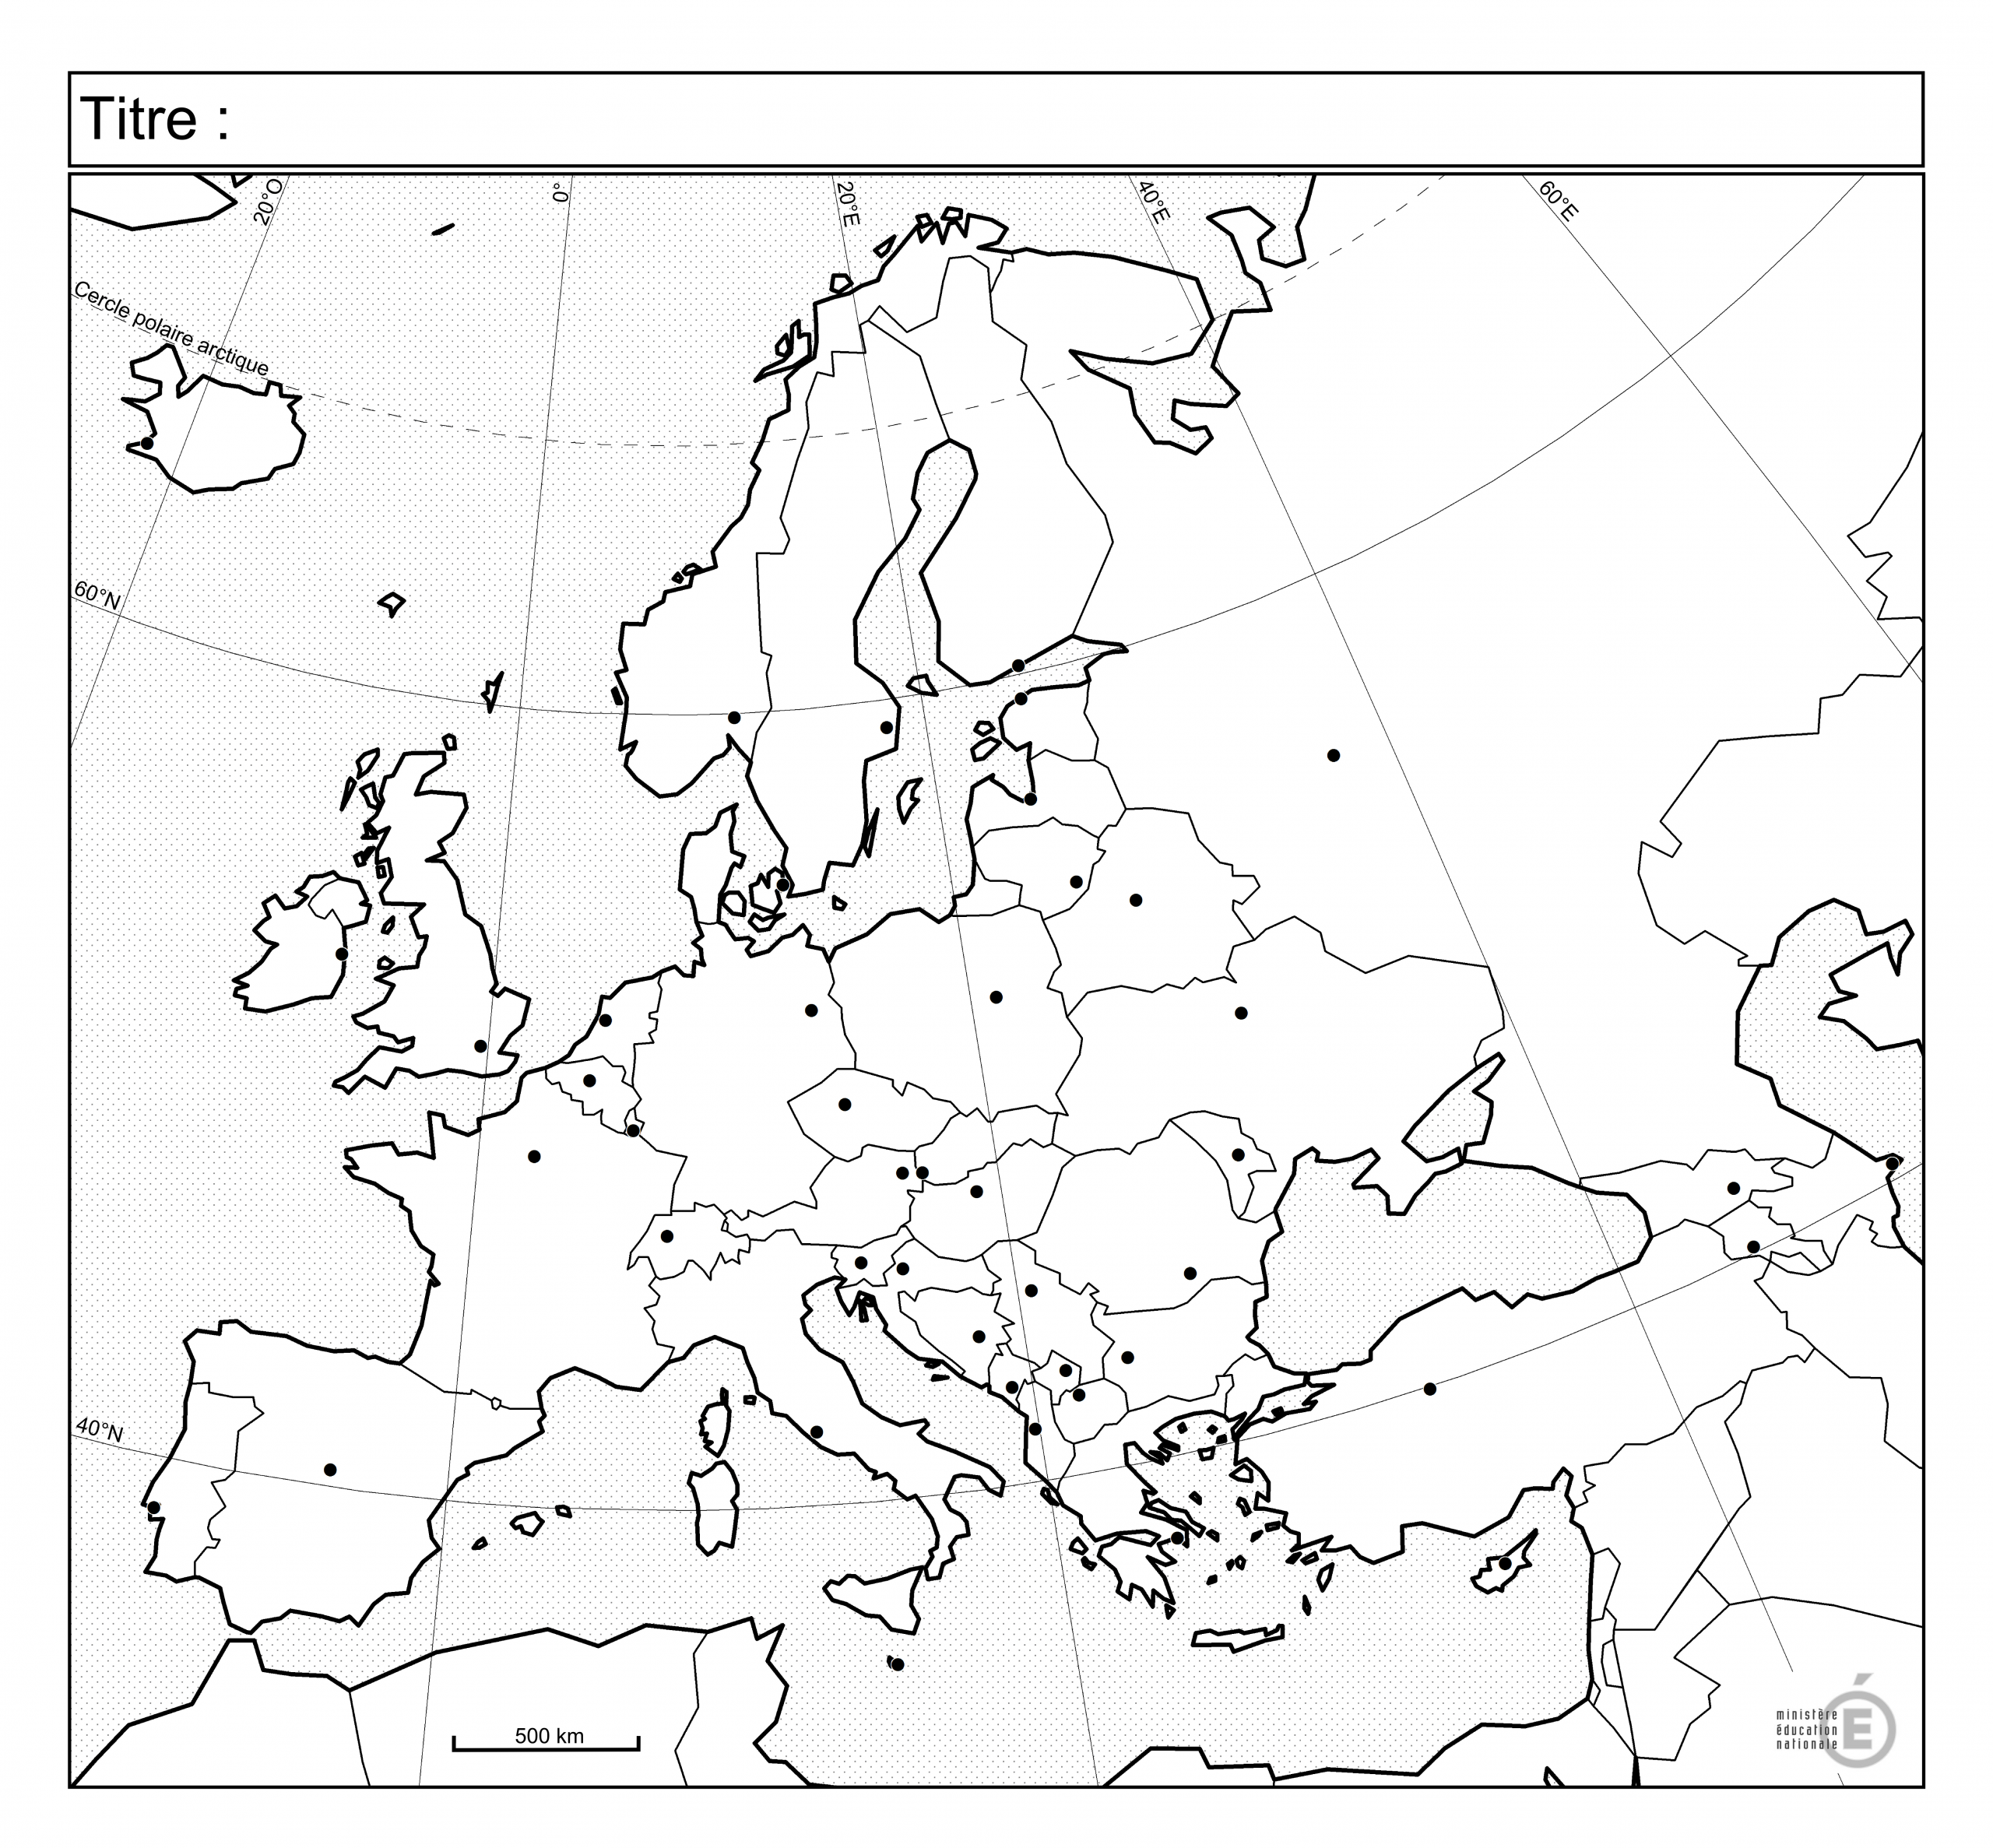 Fonds De Carte - Histoire-Géographie - Éduscol à Carte Europe Vierge À Compléter En Ligne 